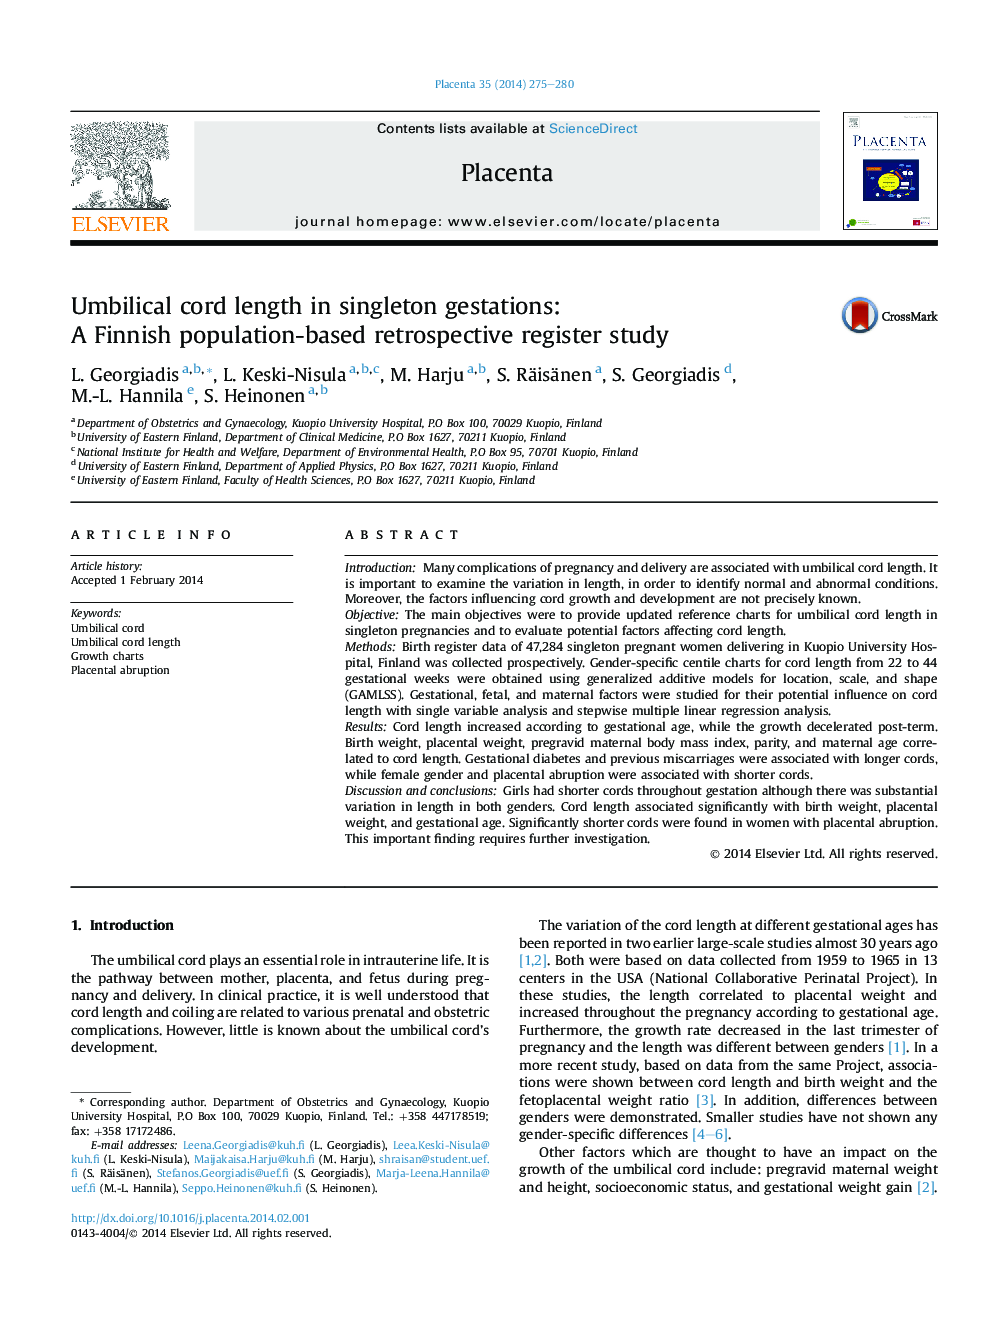 طول طناب نخاعی در بارداری تک تک: یک مطالعه ثبت نام پیشین در فنلاند مبتنی بر جمعیت فنلاند 